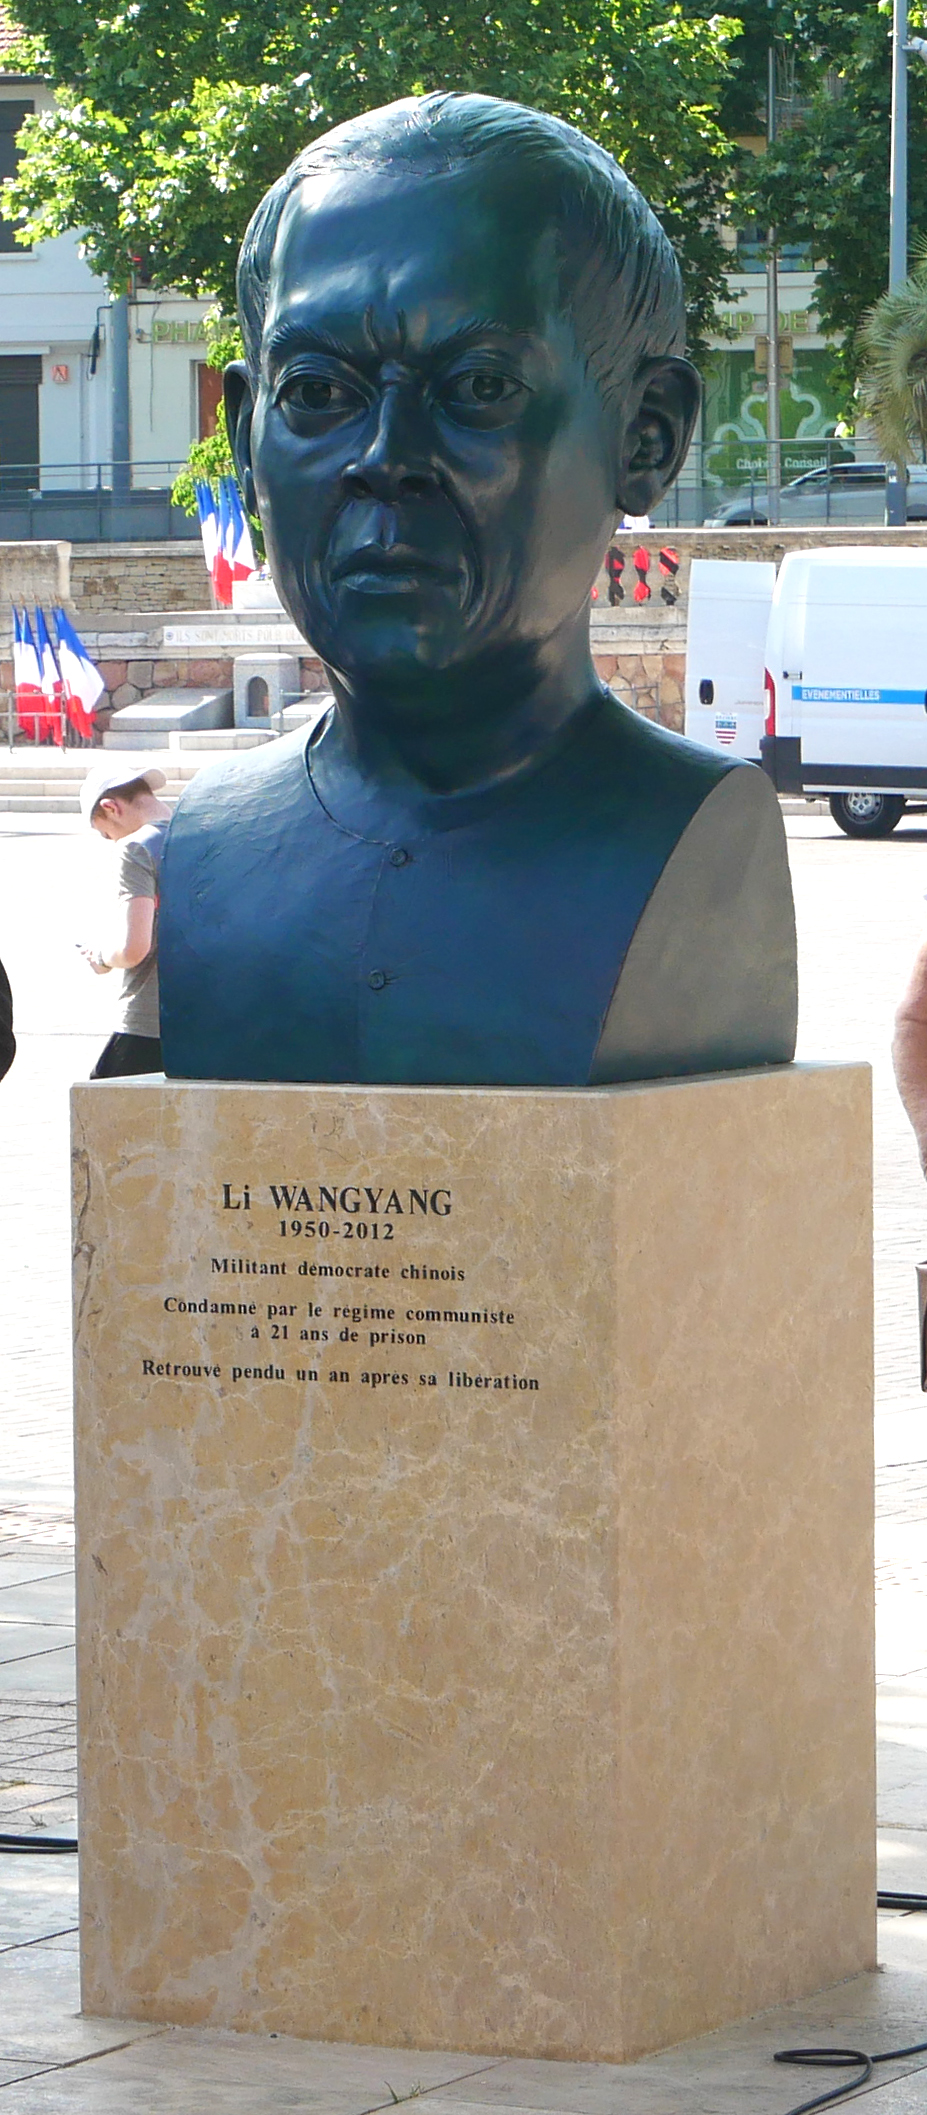 Buste monumental en bronze de Li Wangyang